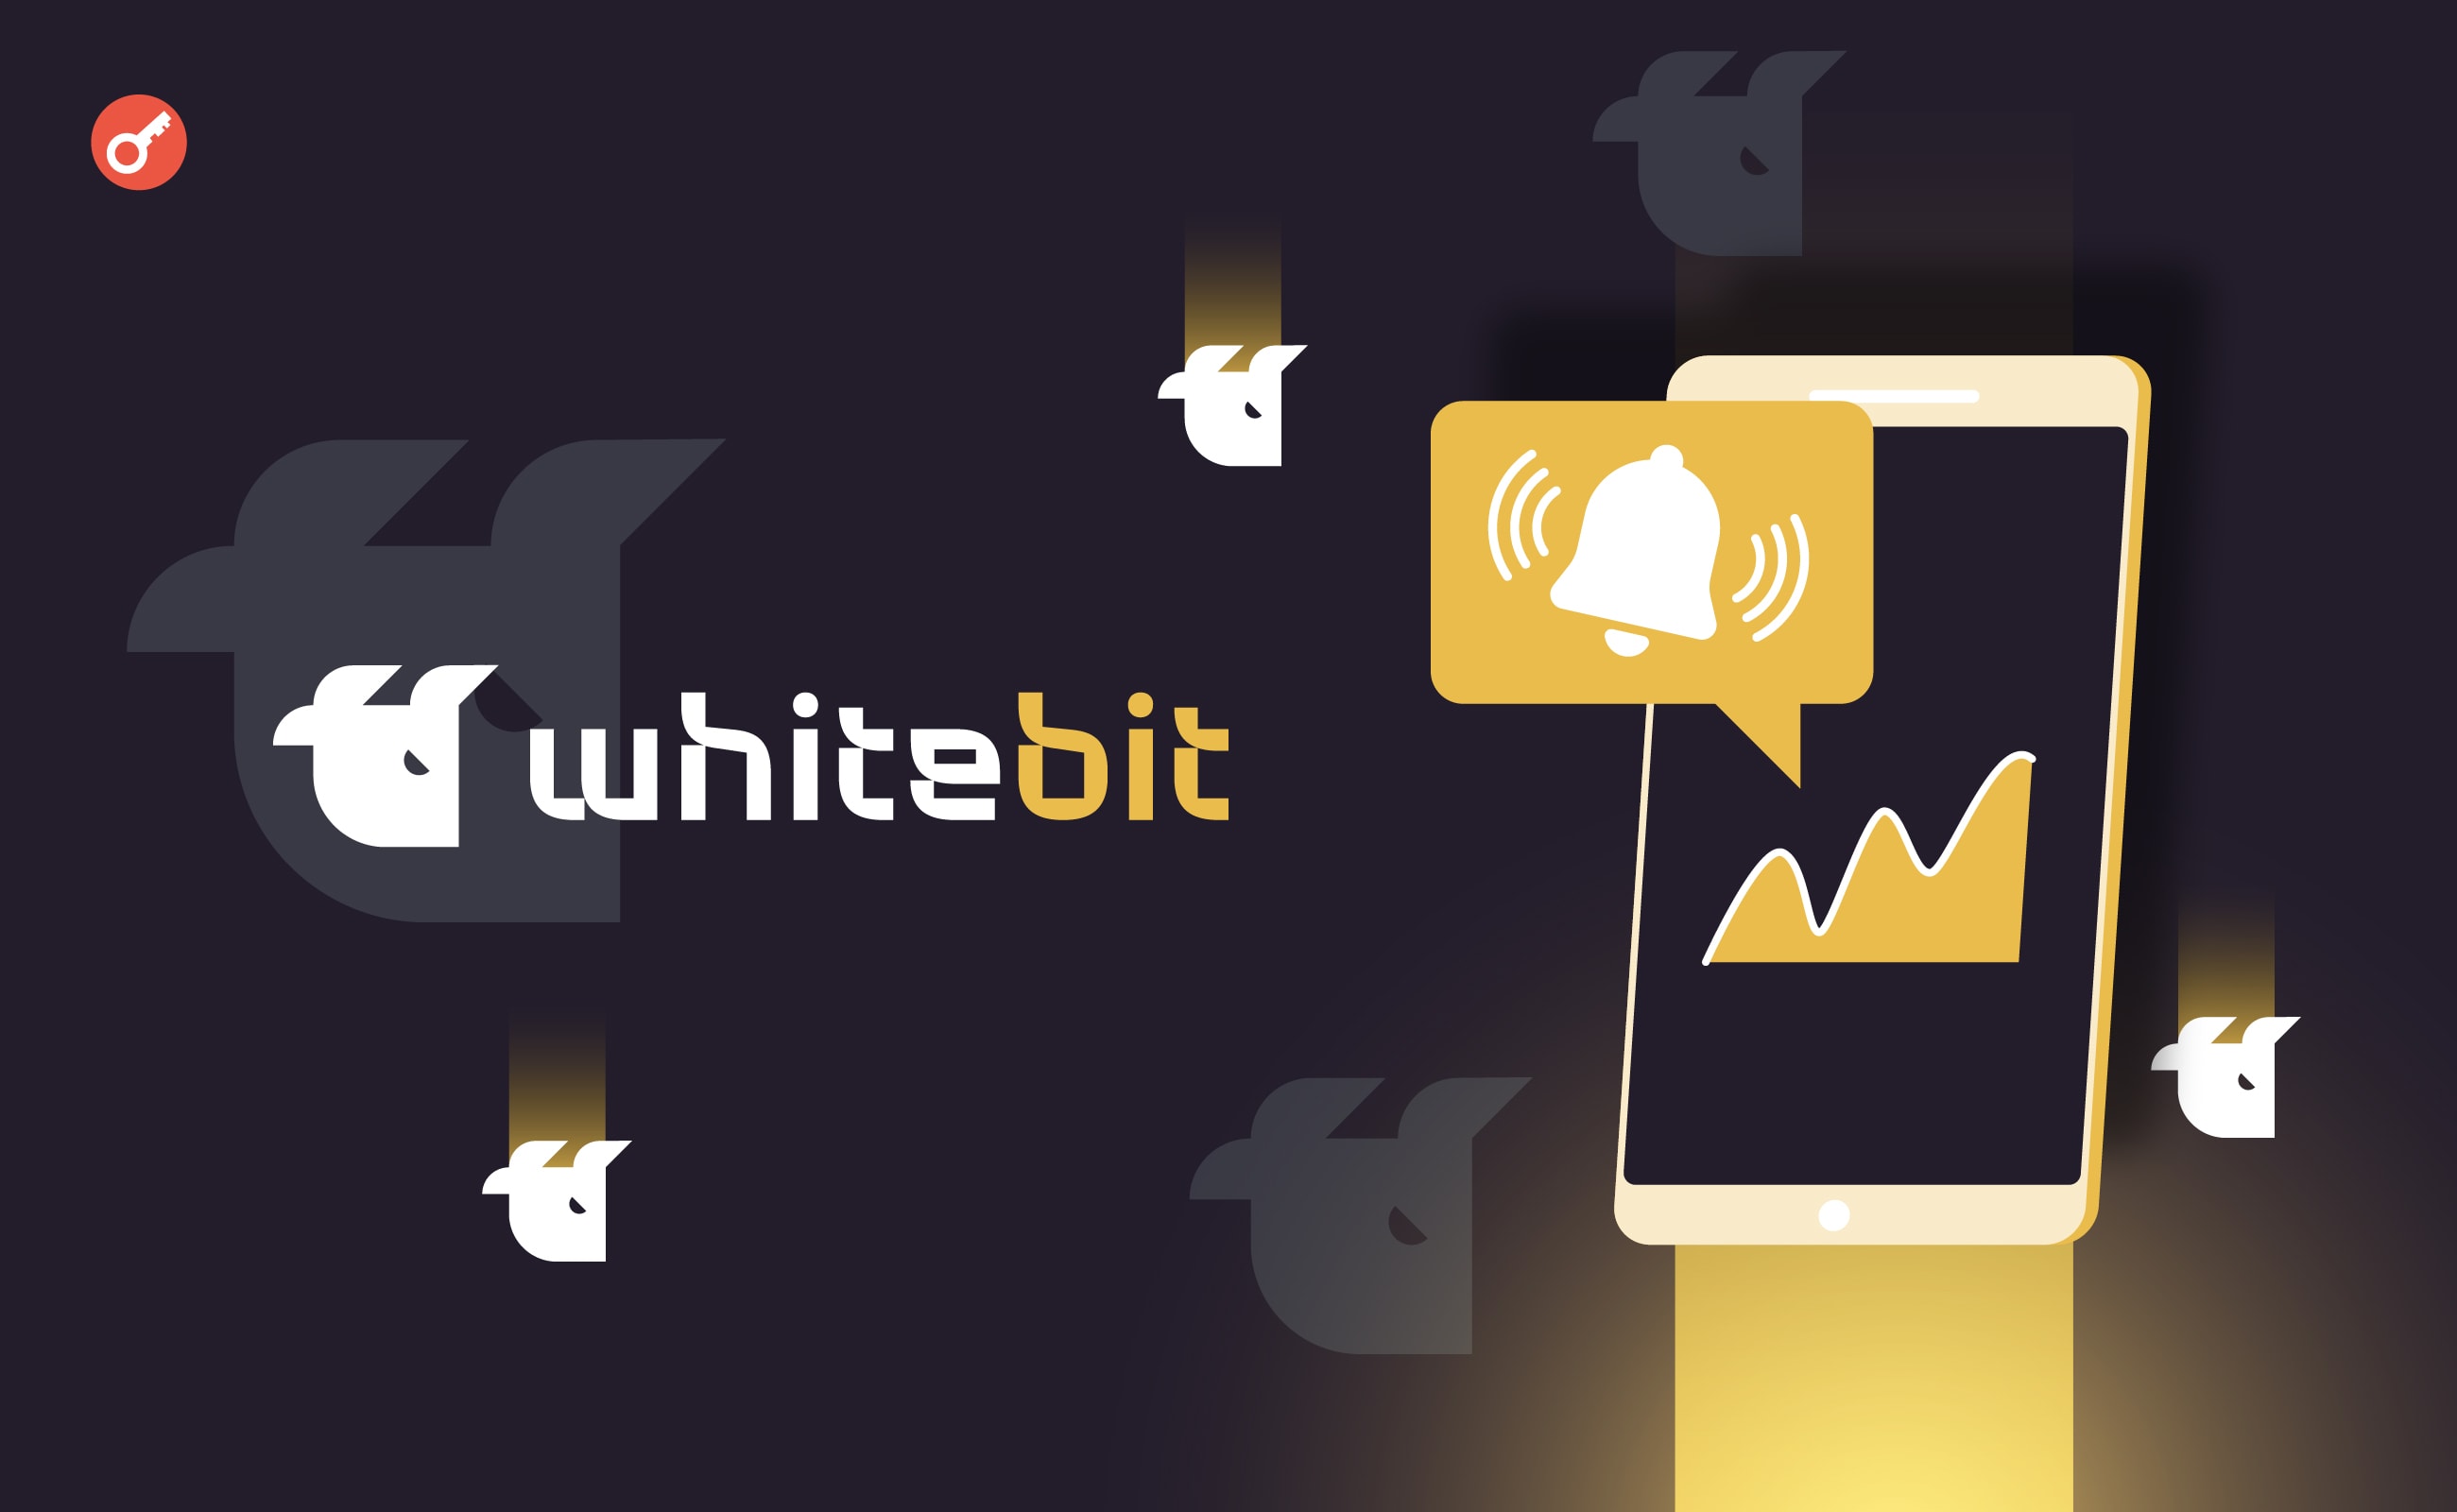 WhiteBIT додала цінові сповіщення у мобільний застосунок. Головний колаж новини.